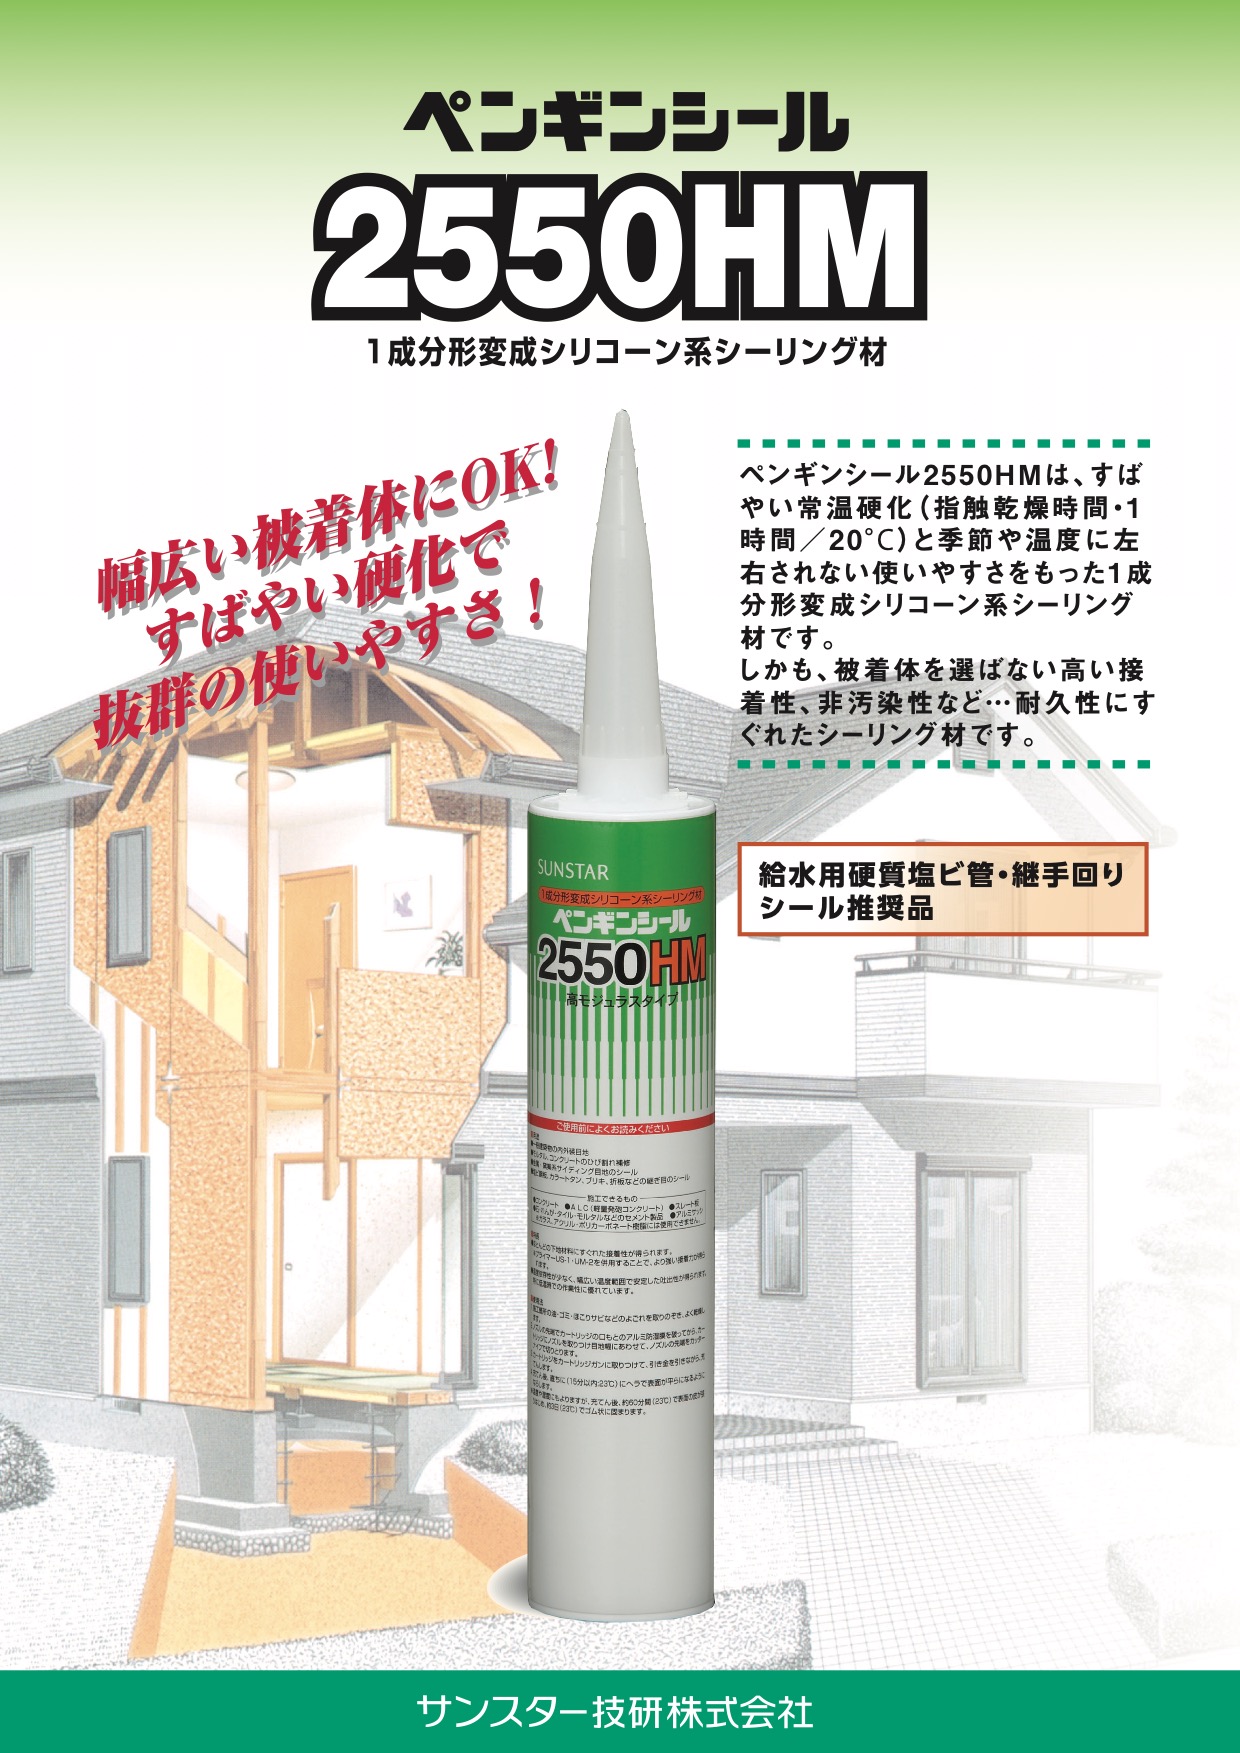 サンスター ペンギンシール 変成シリコン MS2500 typeNB 4L×2缶 金属缶 トナー 200g×2個 セット - 1